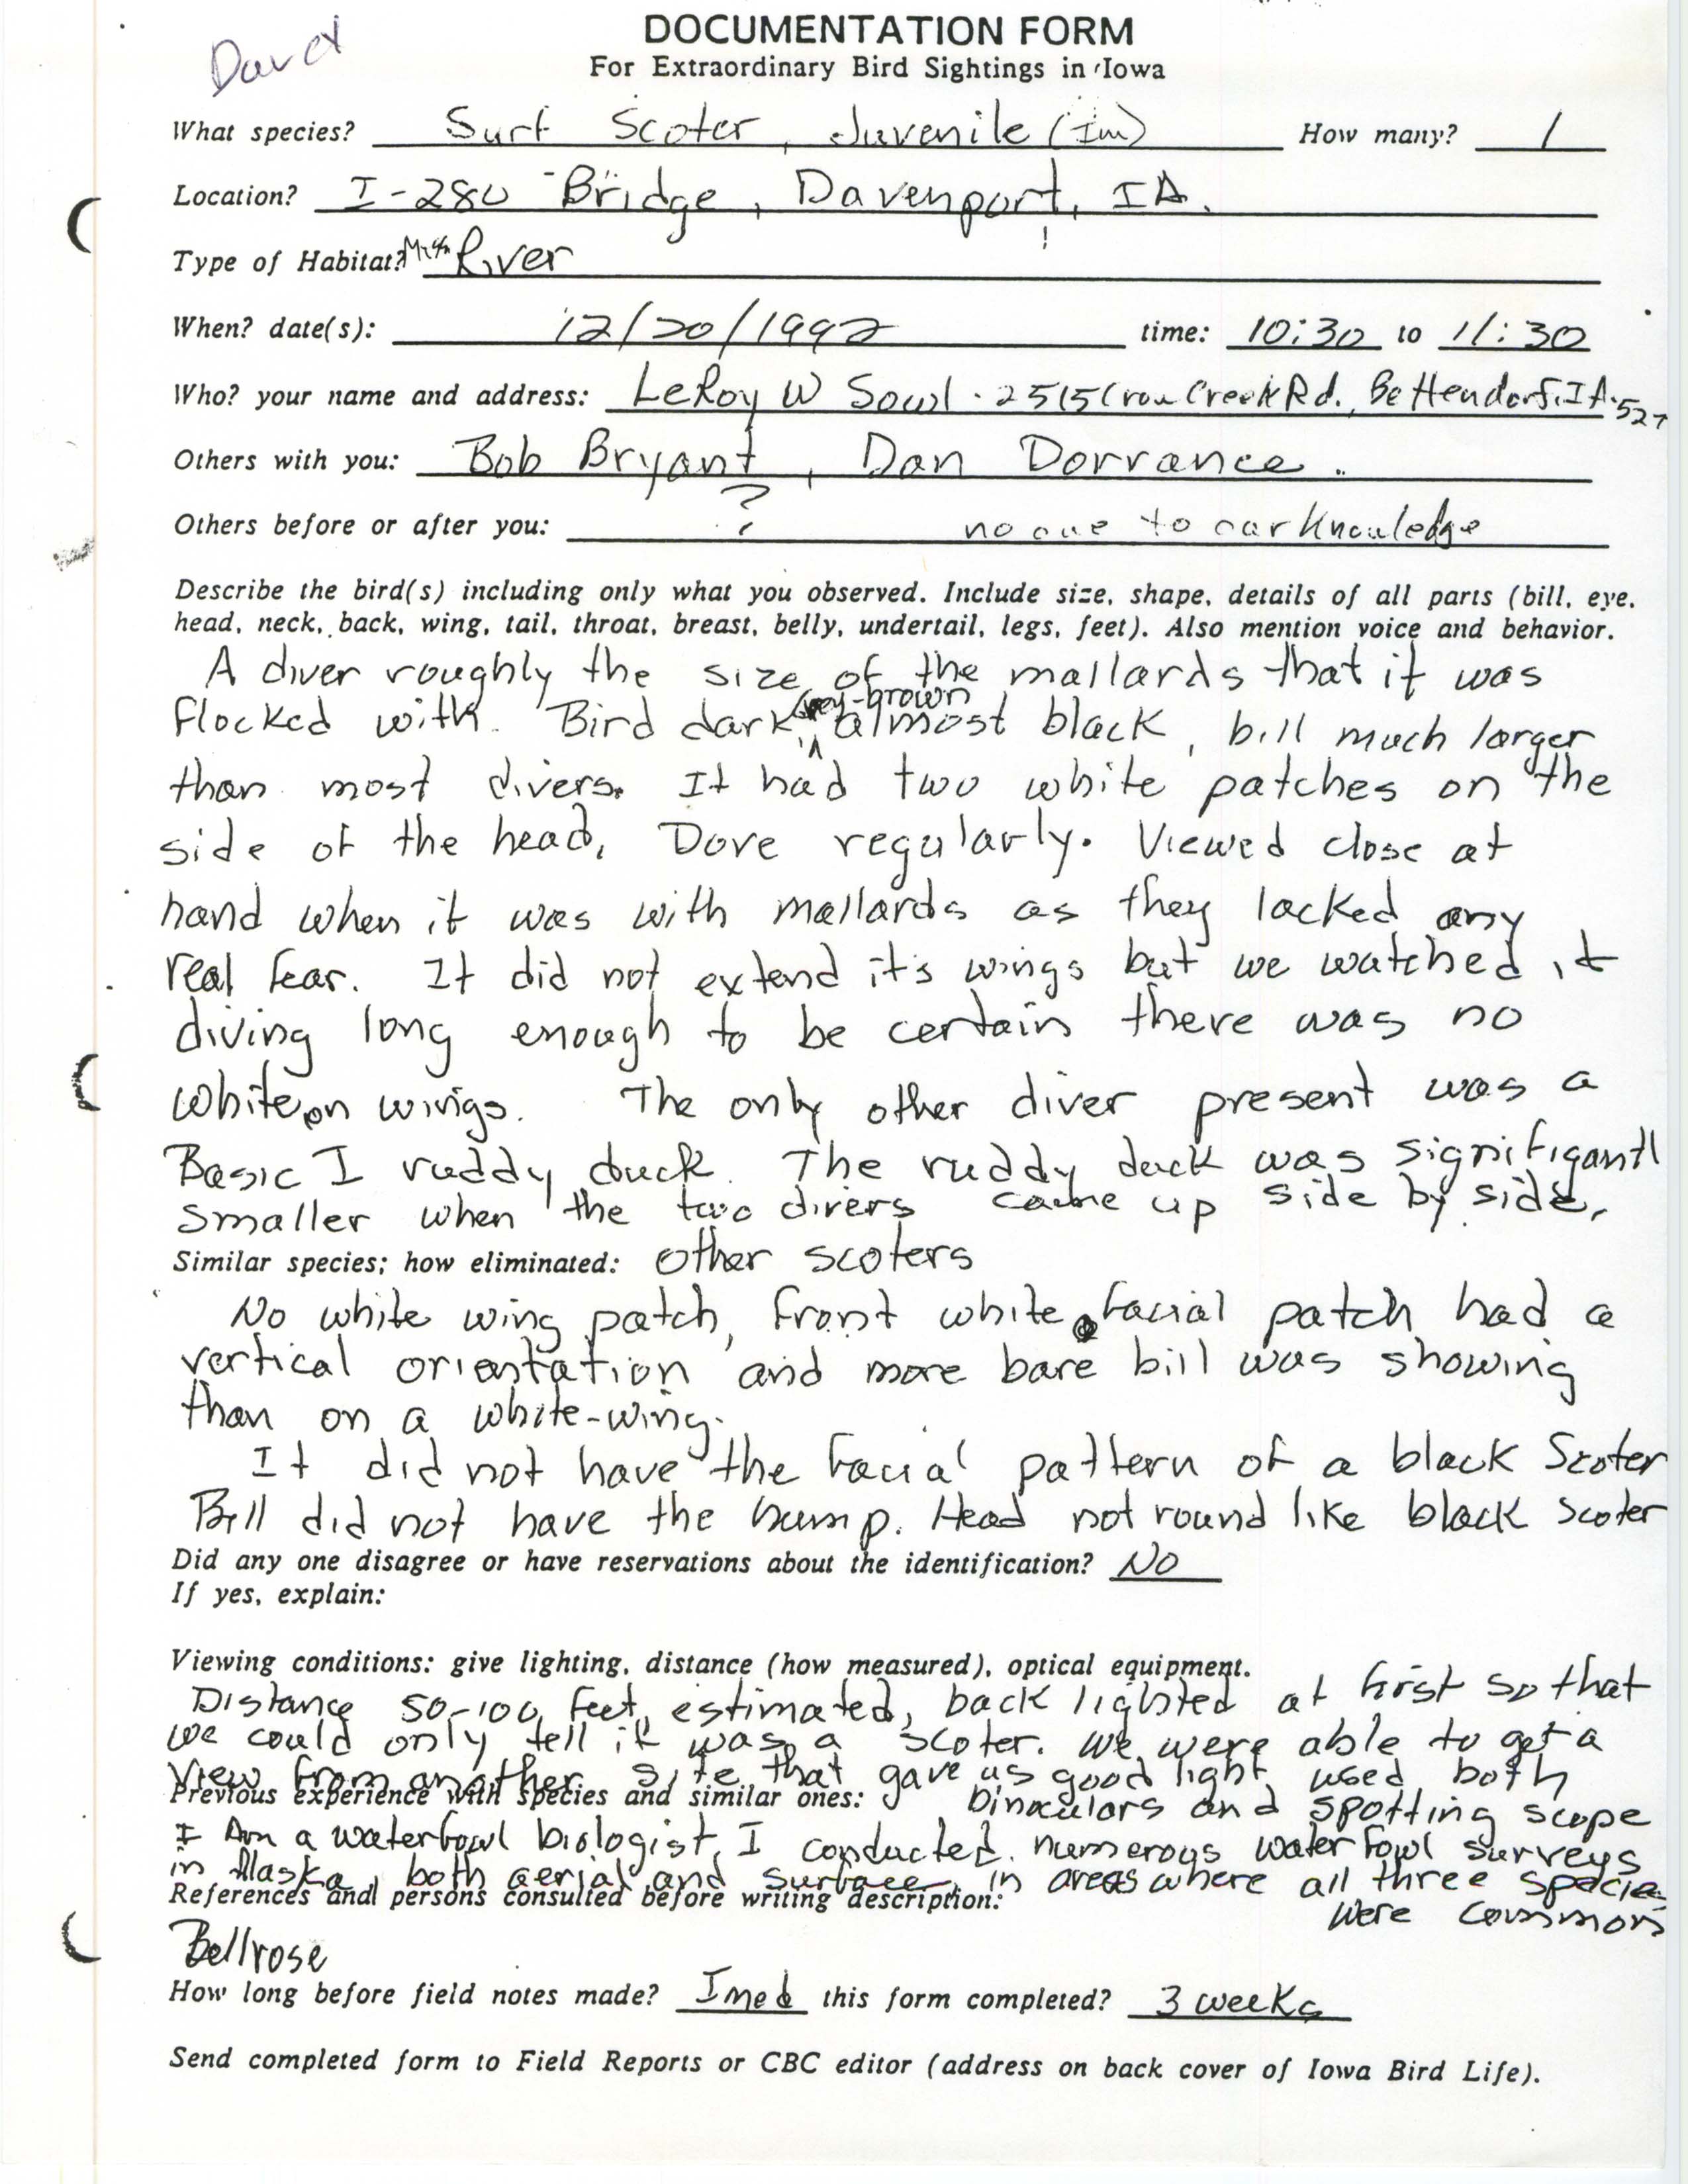 Rare bird documentation form for Surf Scoter at Davenport, 1992